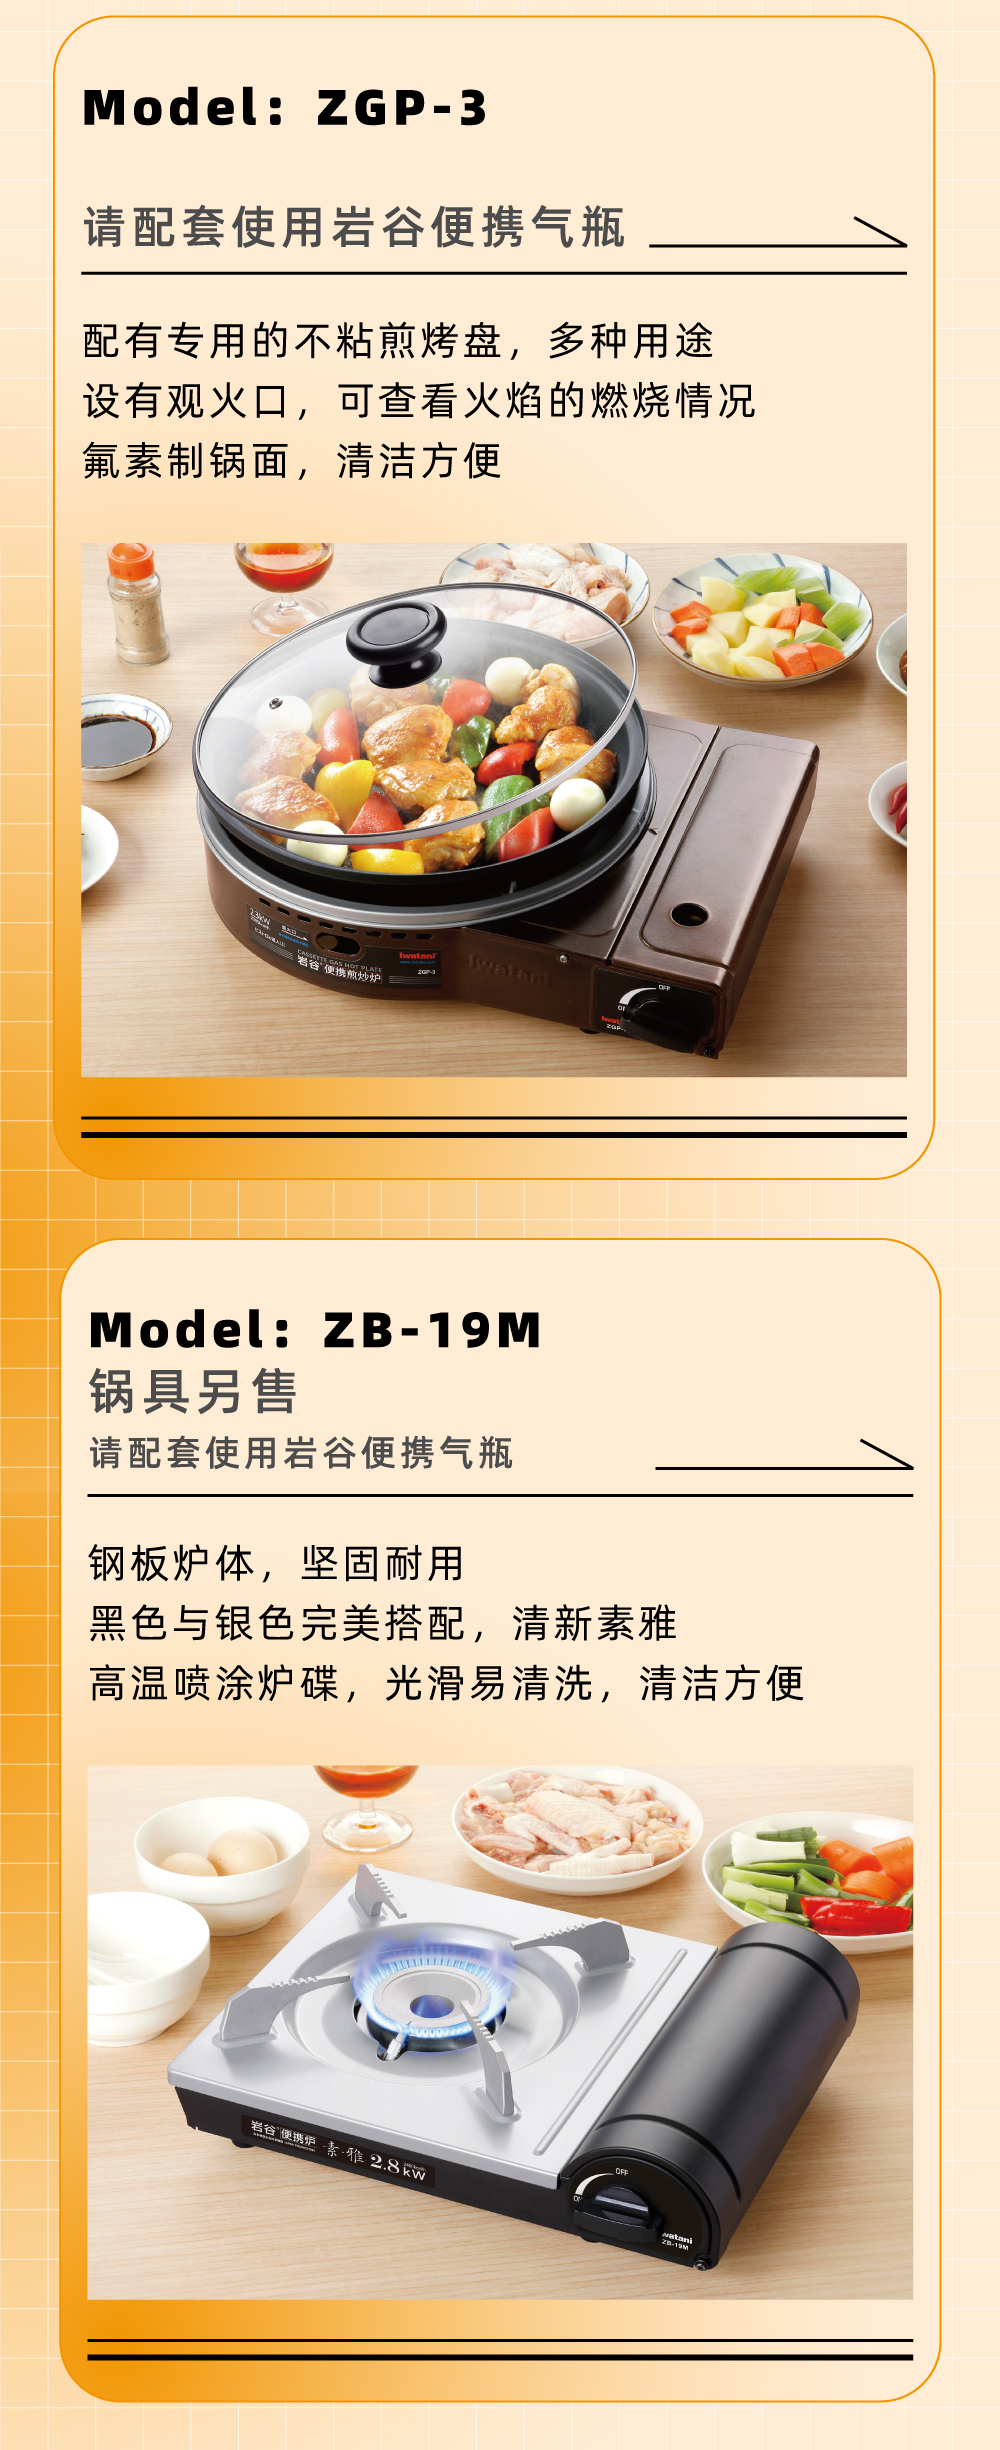 Model：ZGP-3